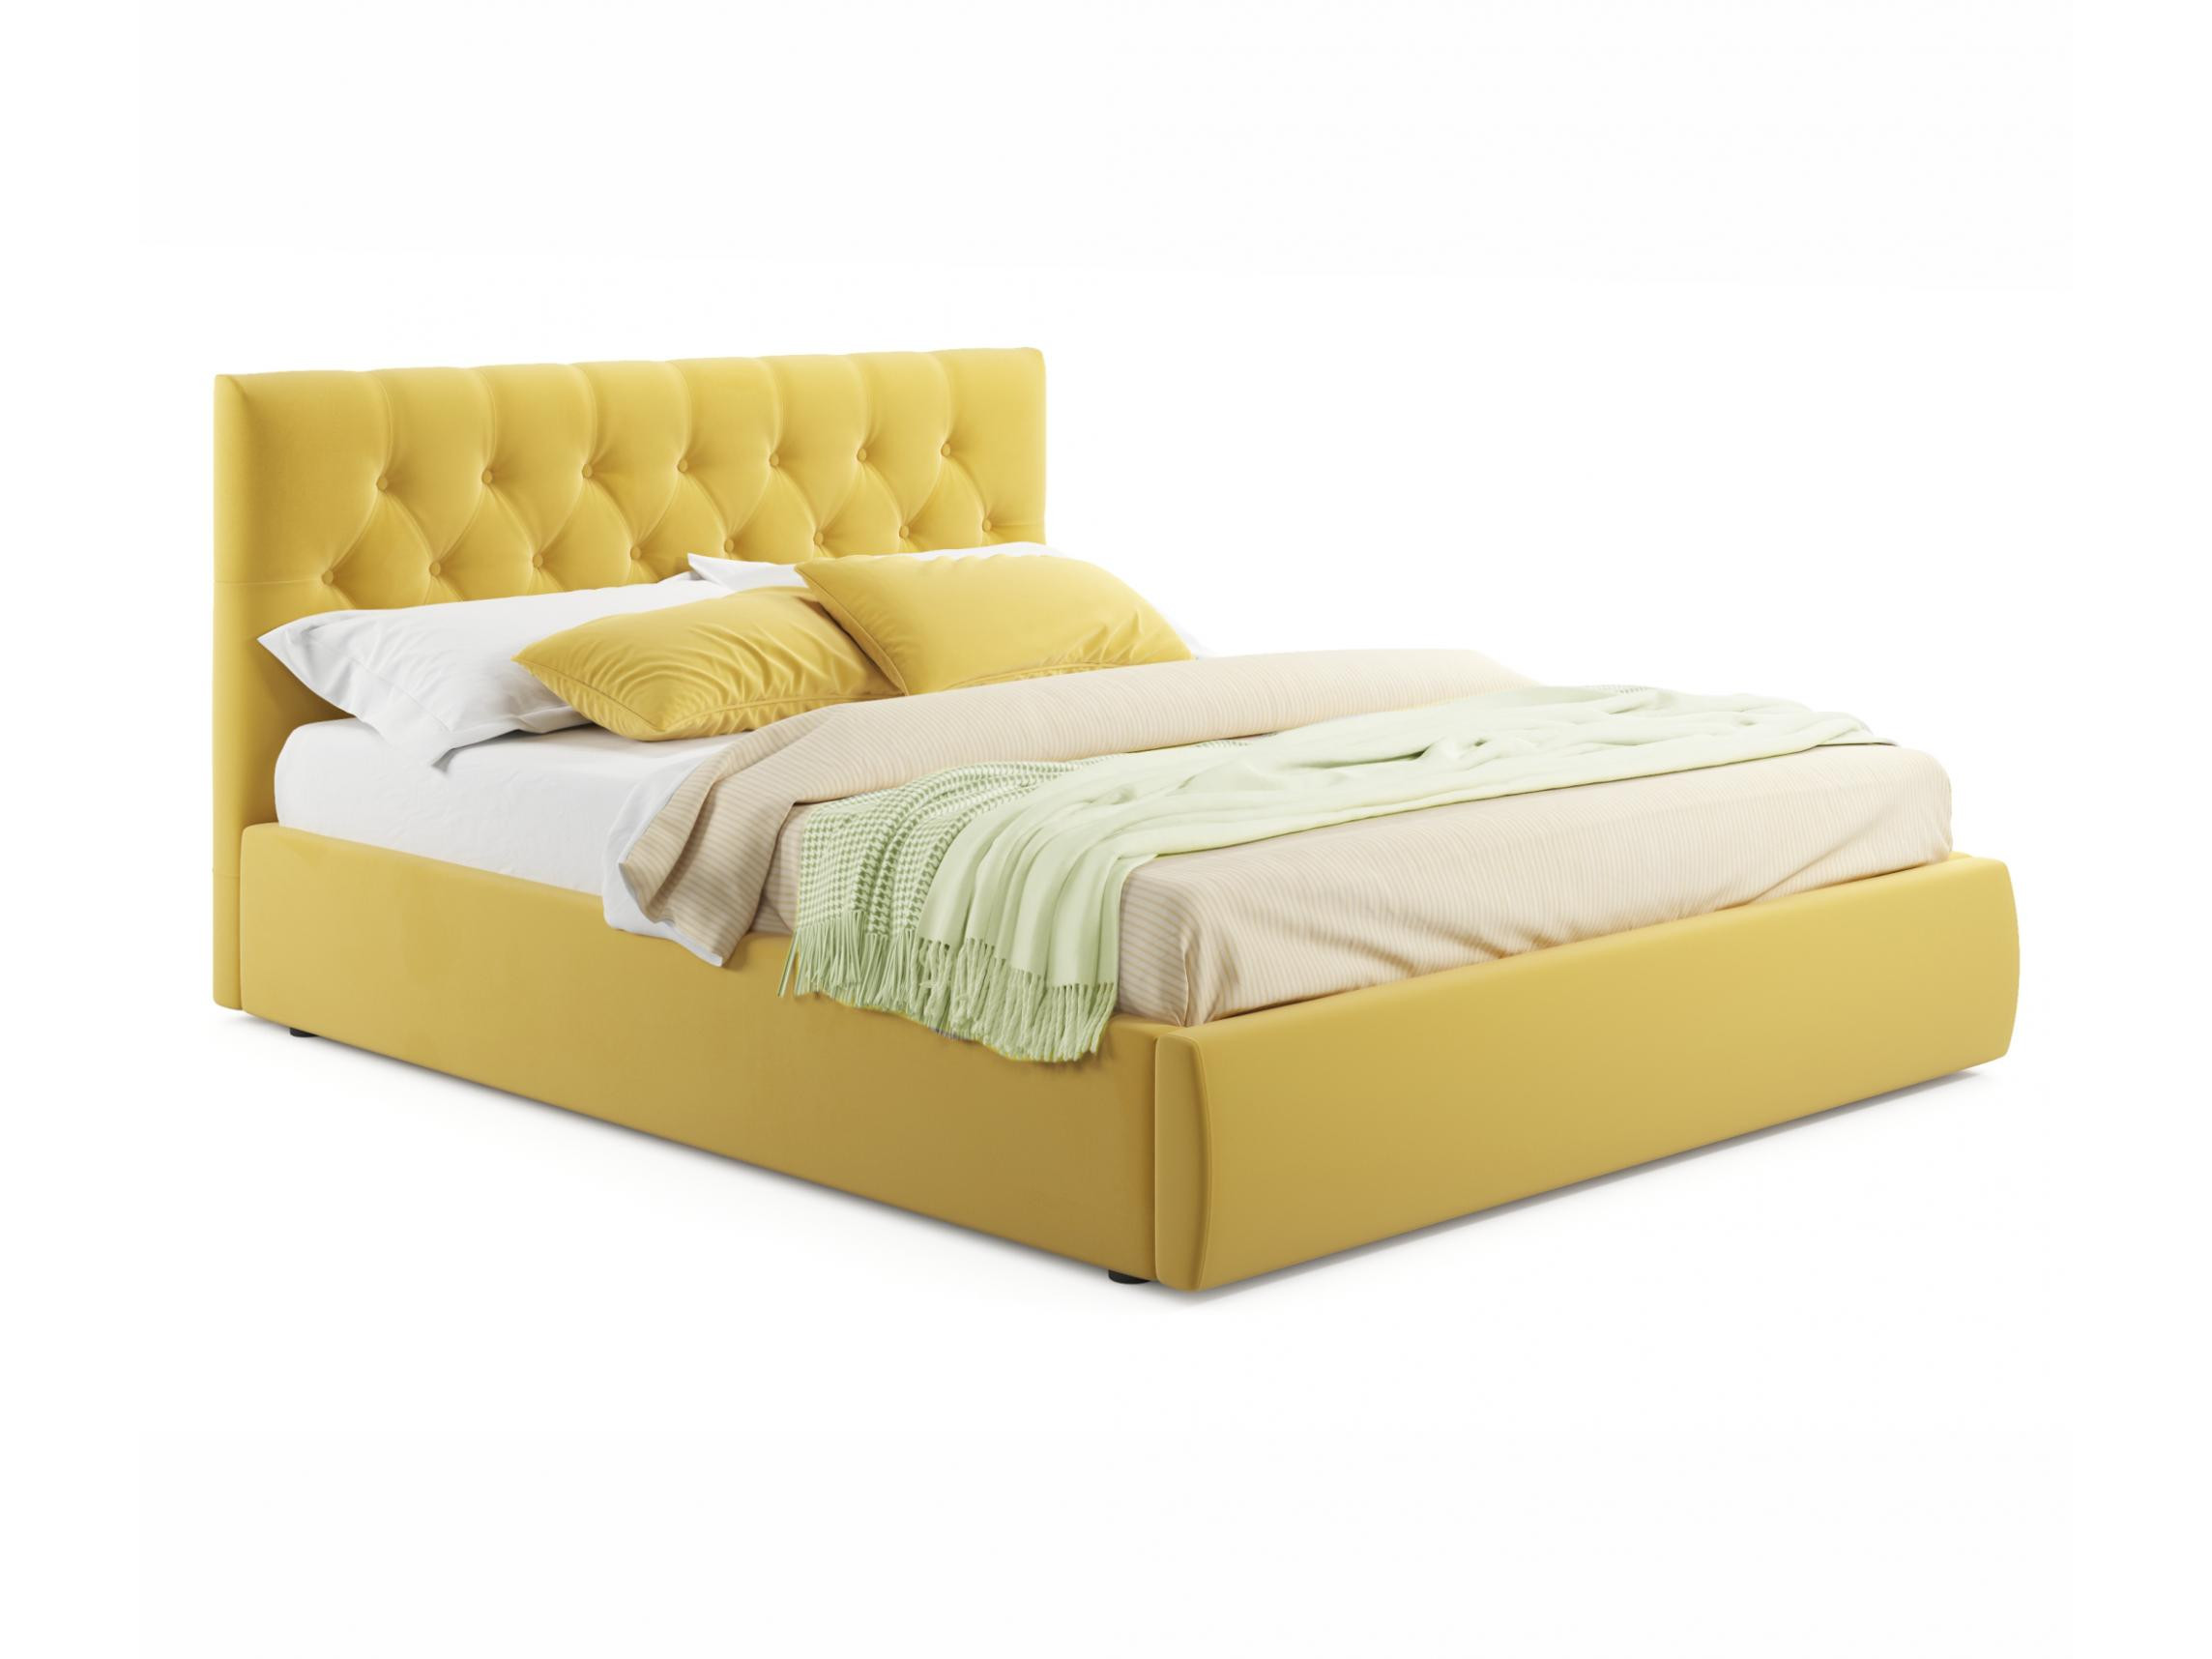 Мягкая кровать Verona 1800 желтая с подъемным механизмом желтый, Желтый, Велюр, ДСП